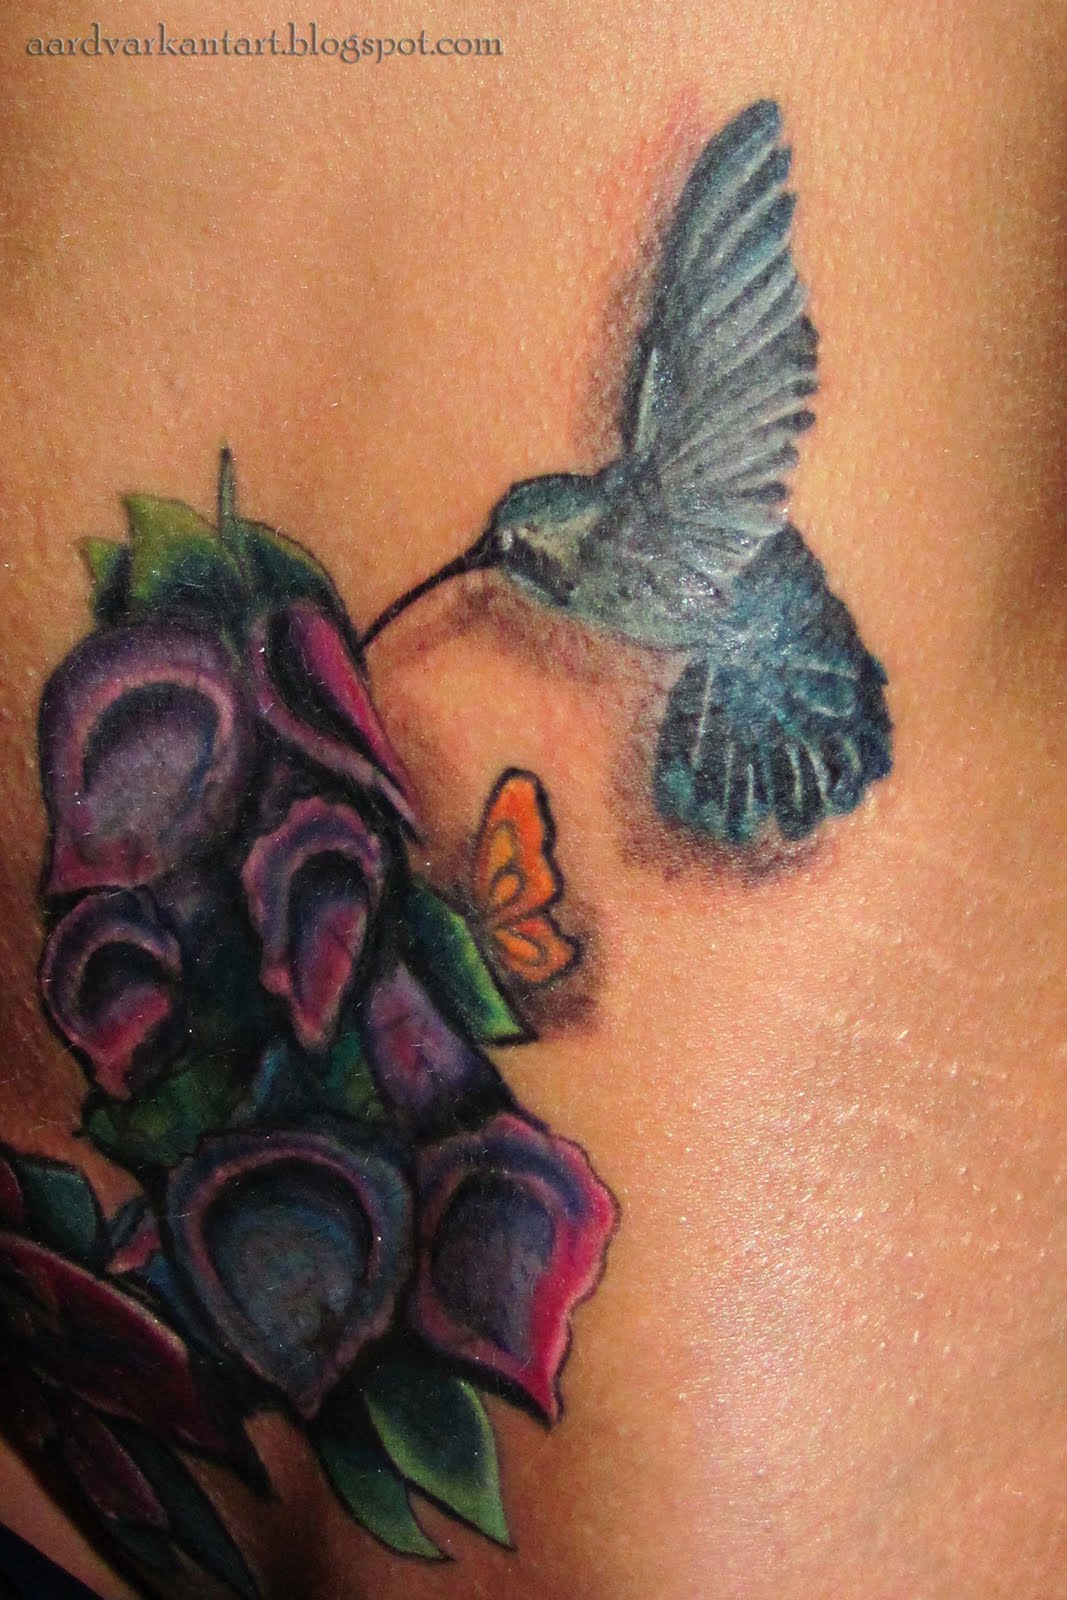 http://2.bp.blogspot.com/-Mp28xYKx4Jw/Tc4E_fdqbsI/AAAAAAAAAPQ/Fs68GGVKFVQ/s1600/blue+hummingbird+tattoo.jpg